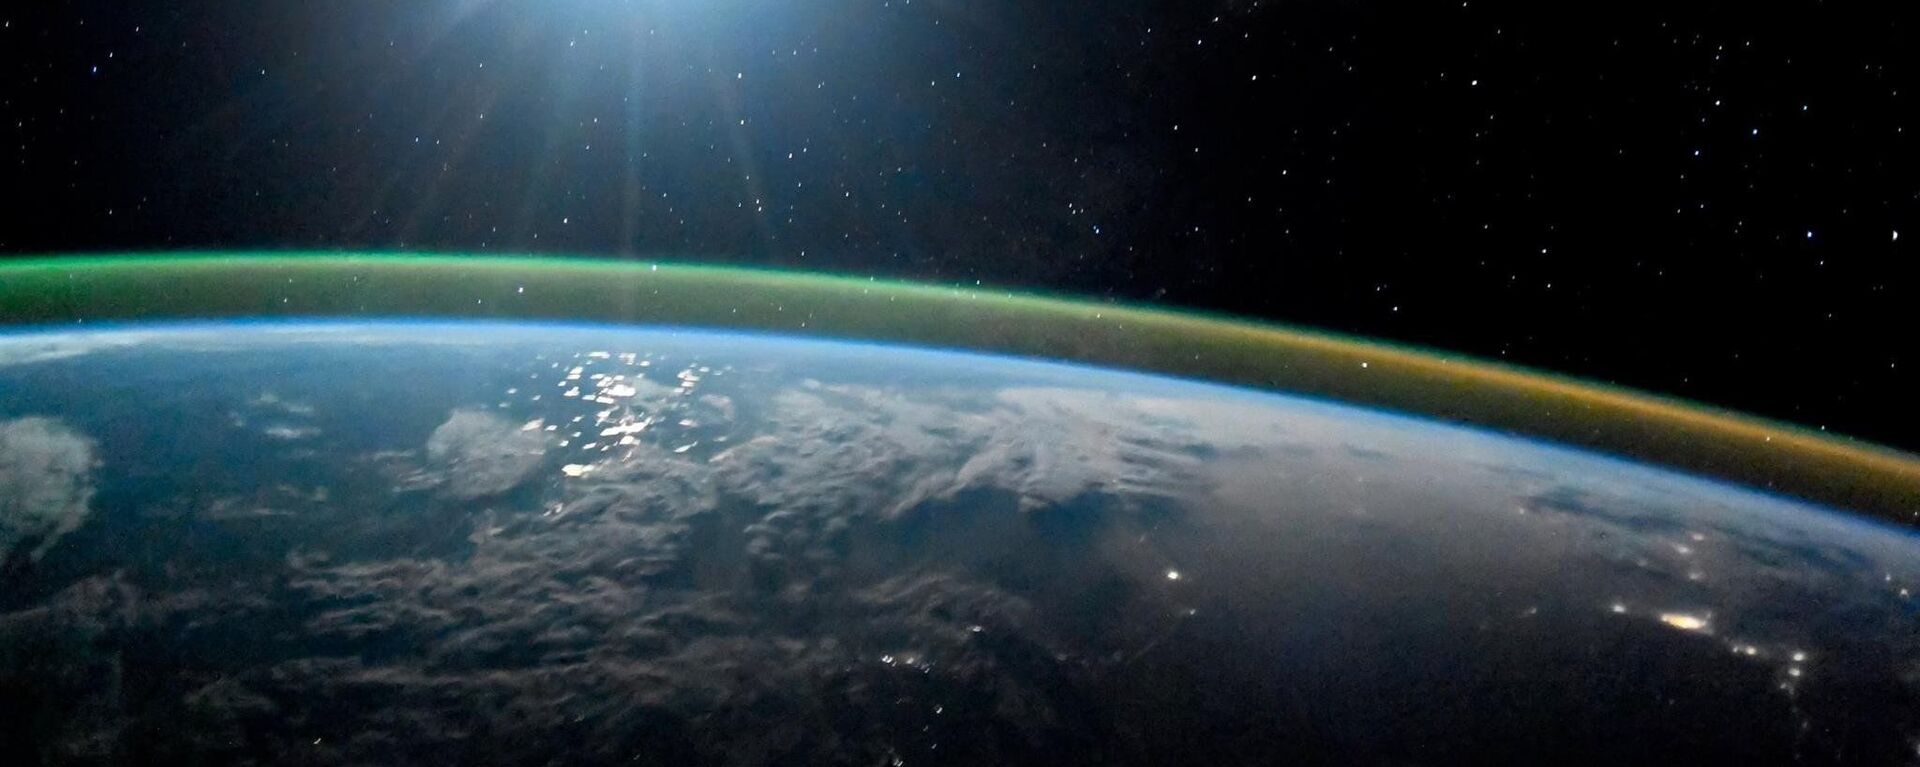 كوكب الأرض ليلا في ضوء القمر الشفق القطبي أورورا. 7 أكتوبر/ تشرين الأول 2017 - سبوتنيك عربي, 1920, 24.03.2021